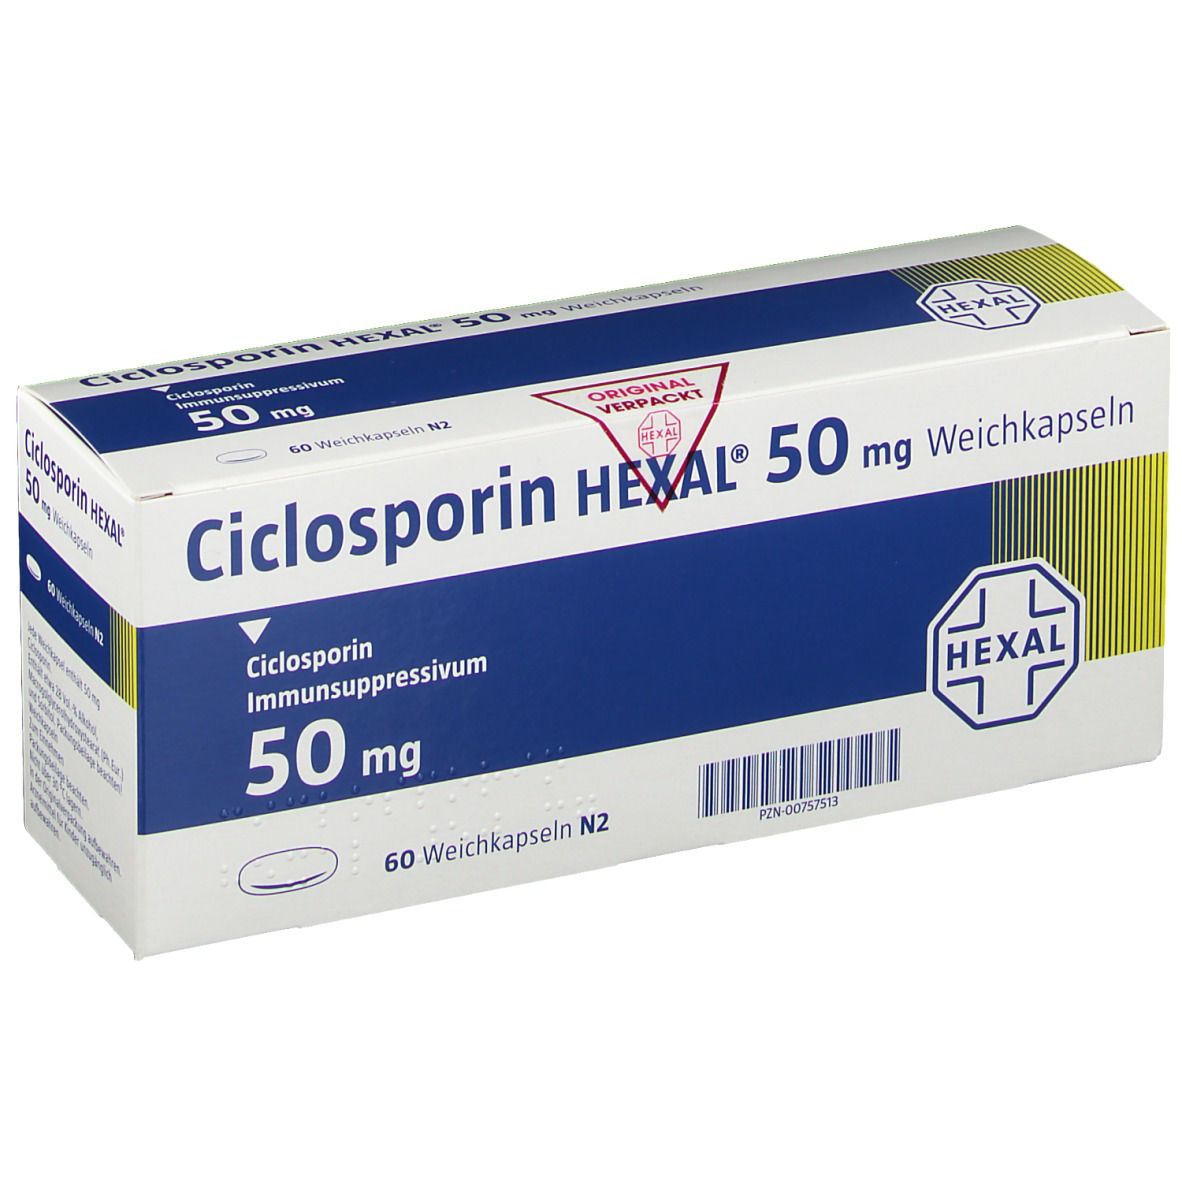 Ciclosporin HEXAL® 50 mg